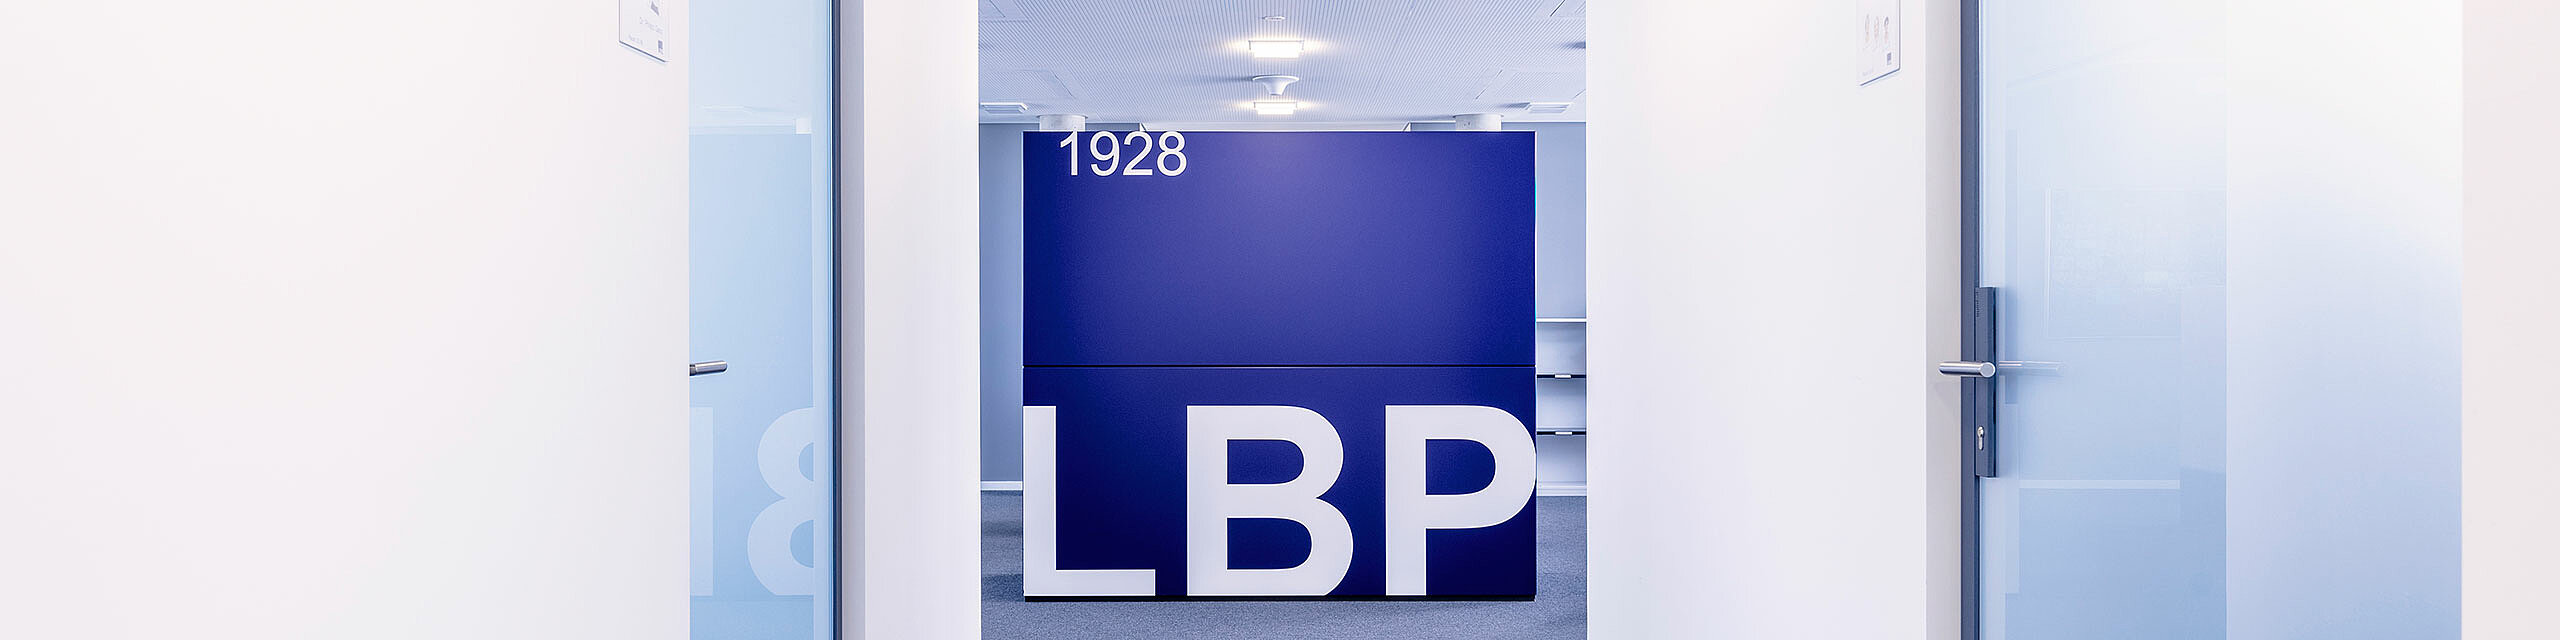 Flur in den Kanzleiräumen von LBP; Logowürfel in der Mitte; viel weiß und blau